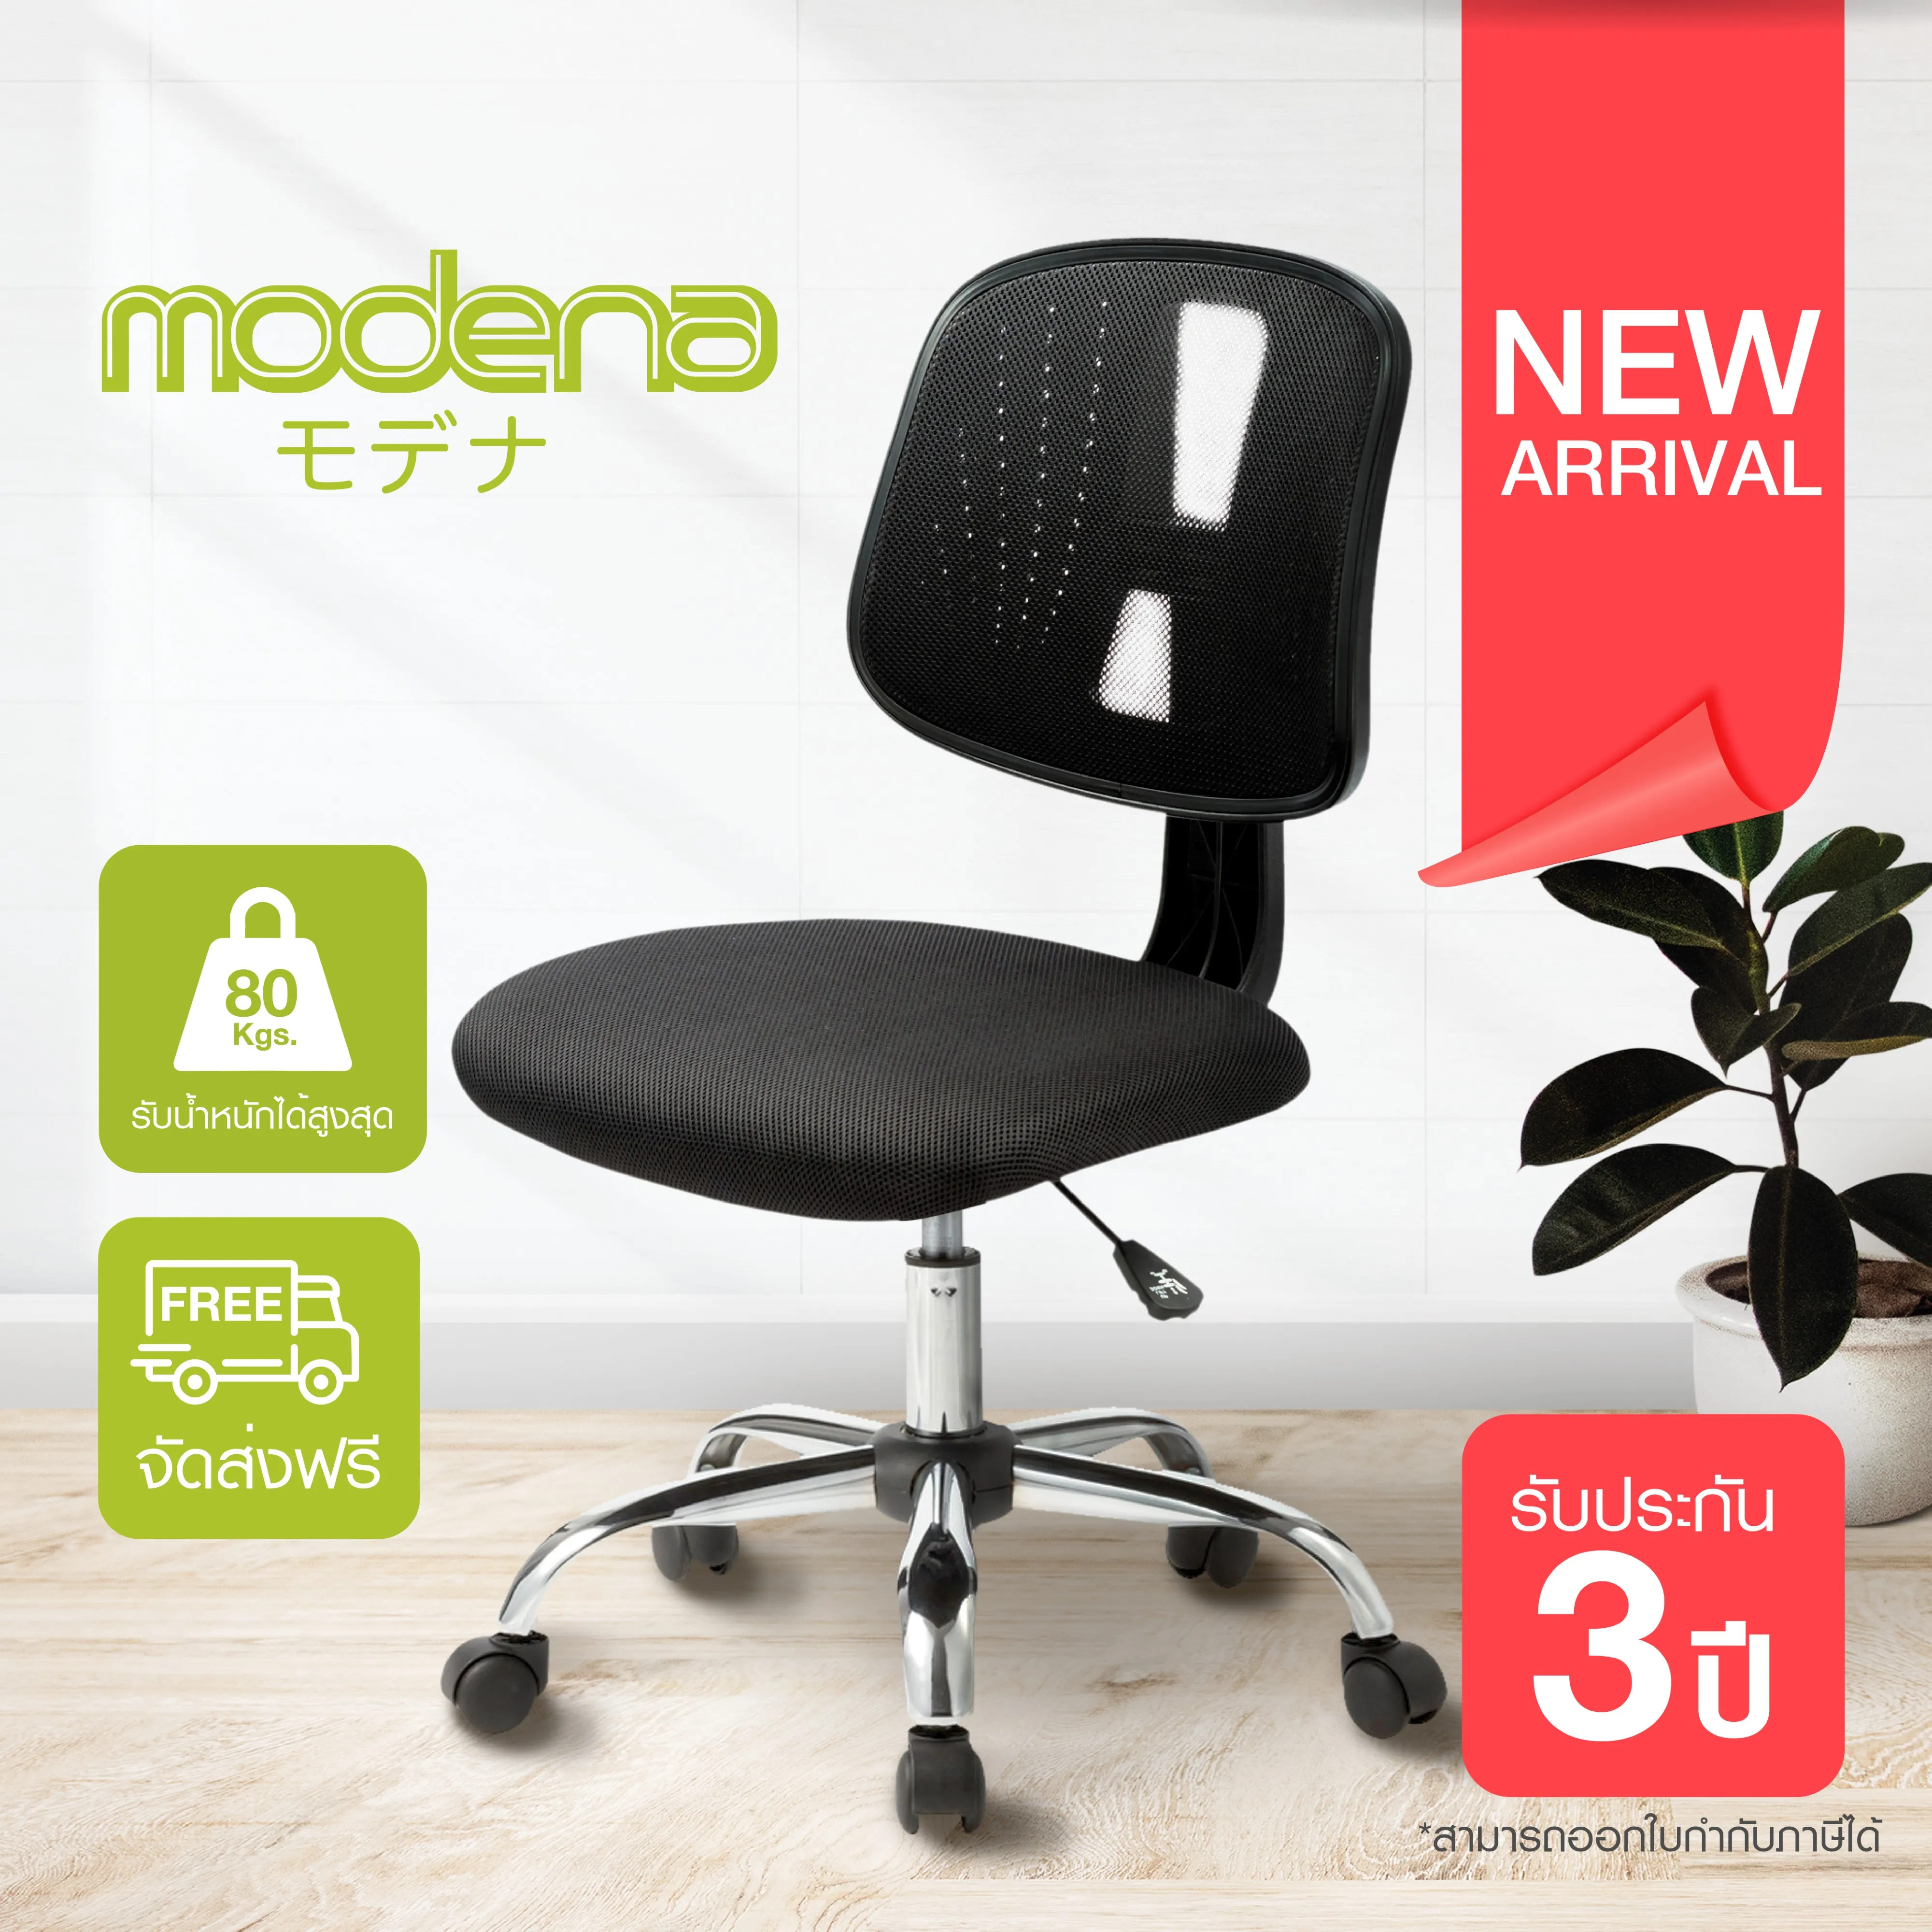 *พร้อมจัดส่ง* Modena เก้าอี้สำนักงาน เก้าอี้ออฟฟิศ เก้าอี้ทำงาน รุ่น Kenji [ออกใบกำกับภาษีได้] | Office Chair - Kenji [Issuable invoice per request]